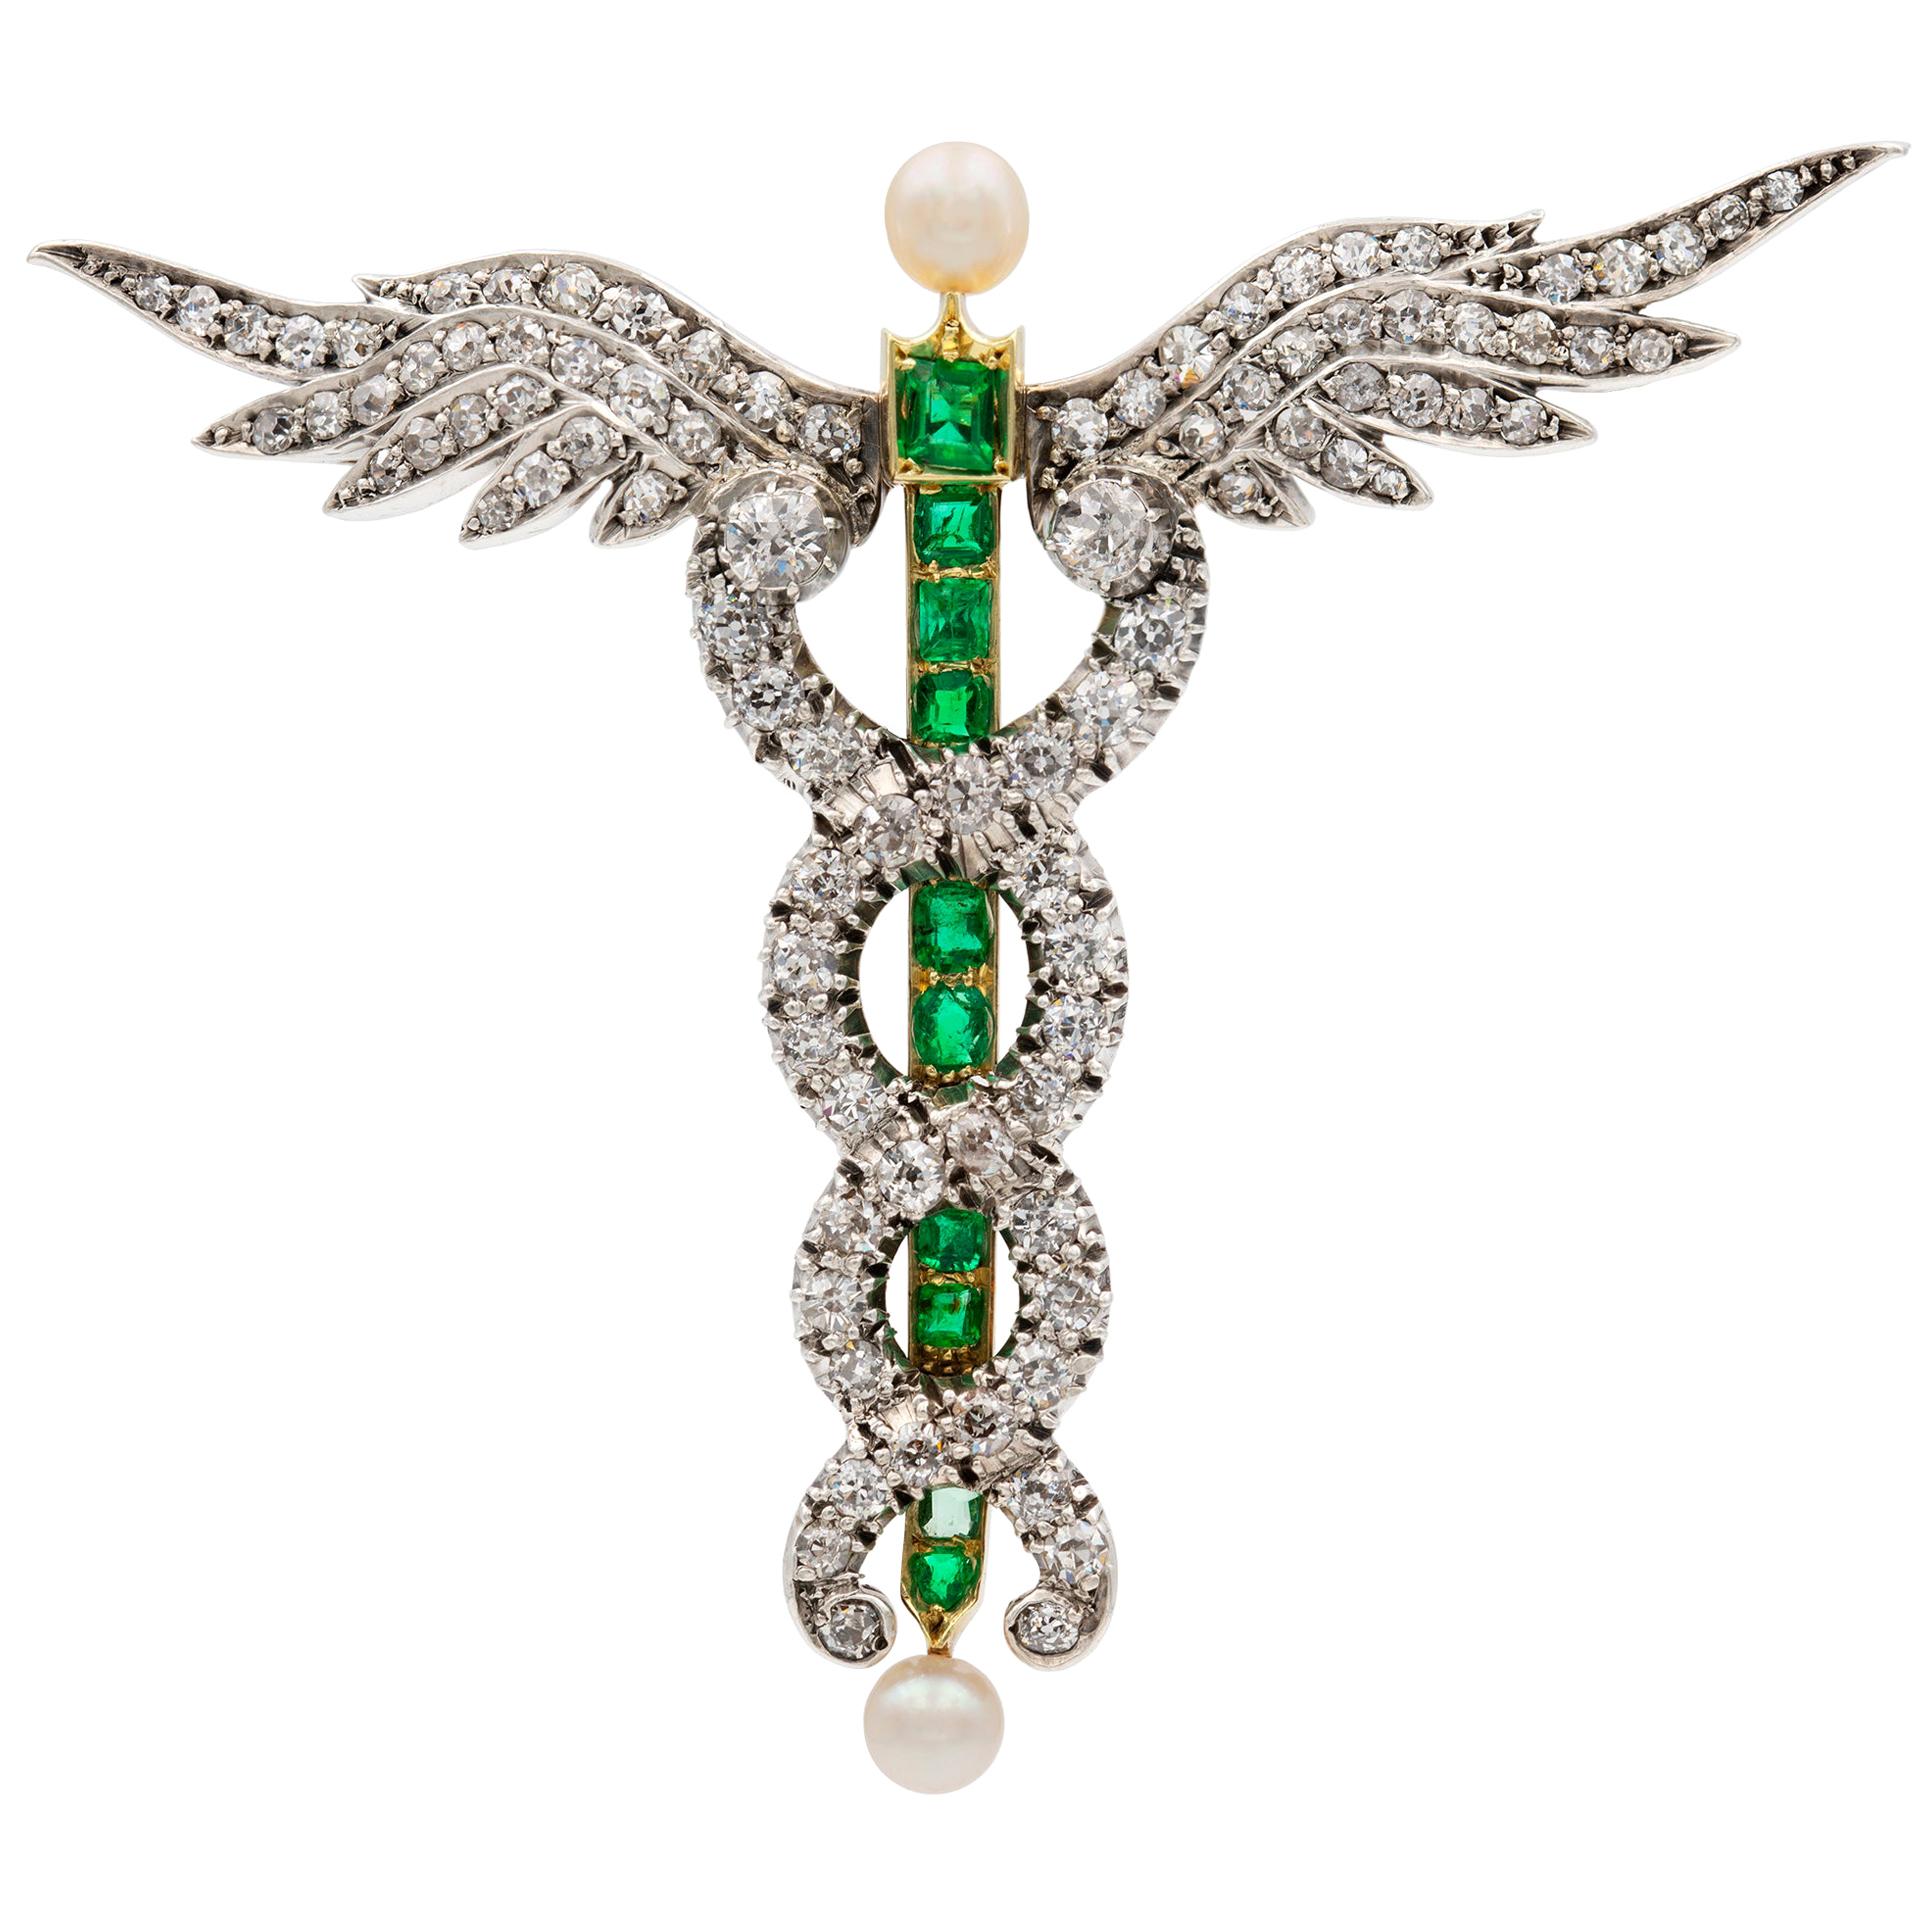 Viktorianische Caduceus-Brosche mit Diamanten, Smaragden und Perlen